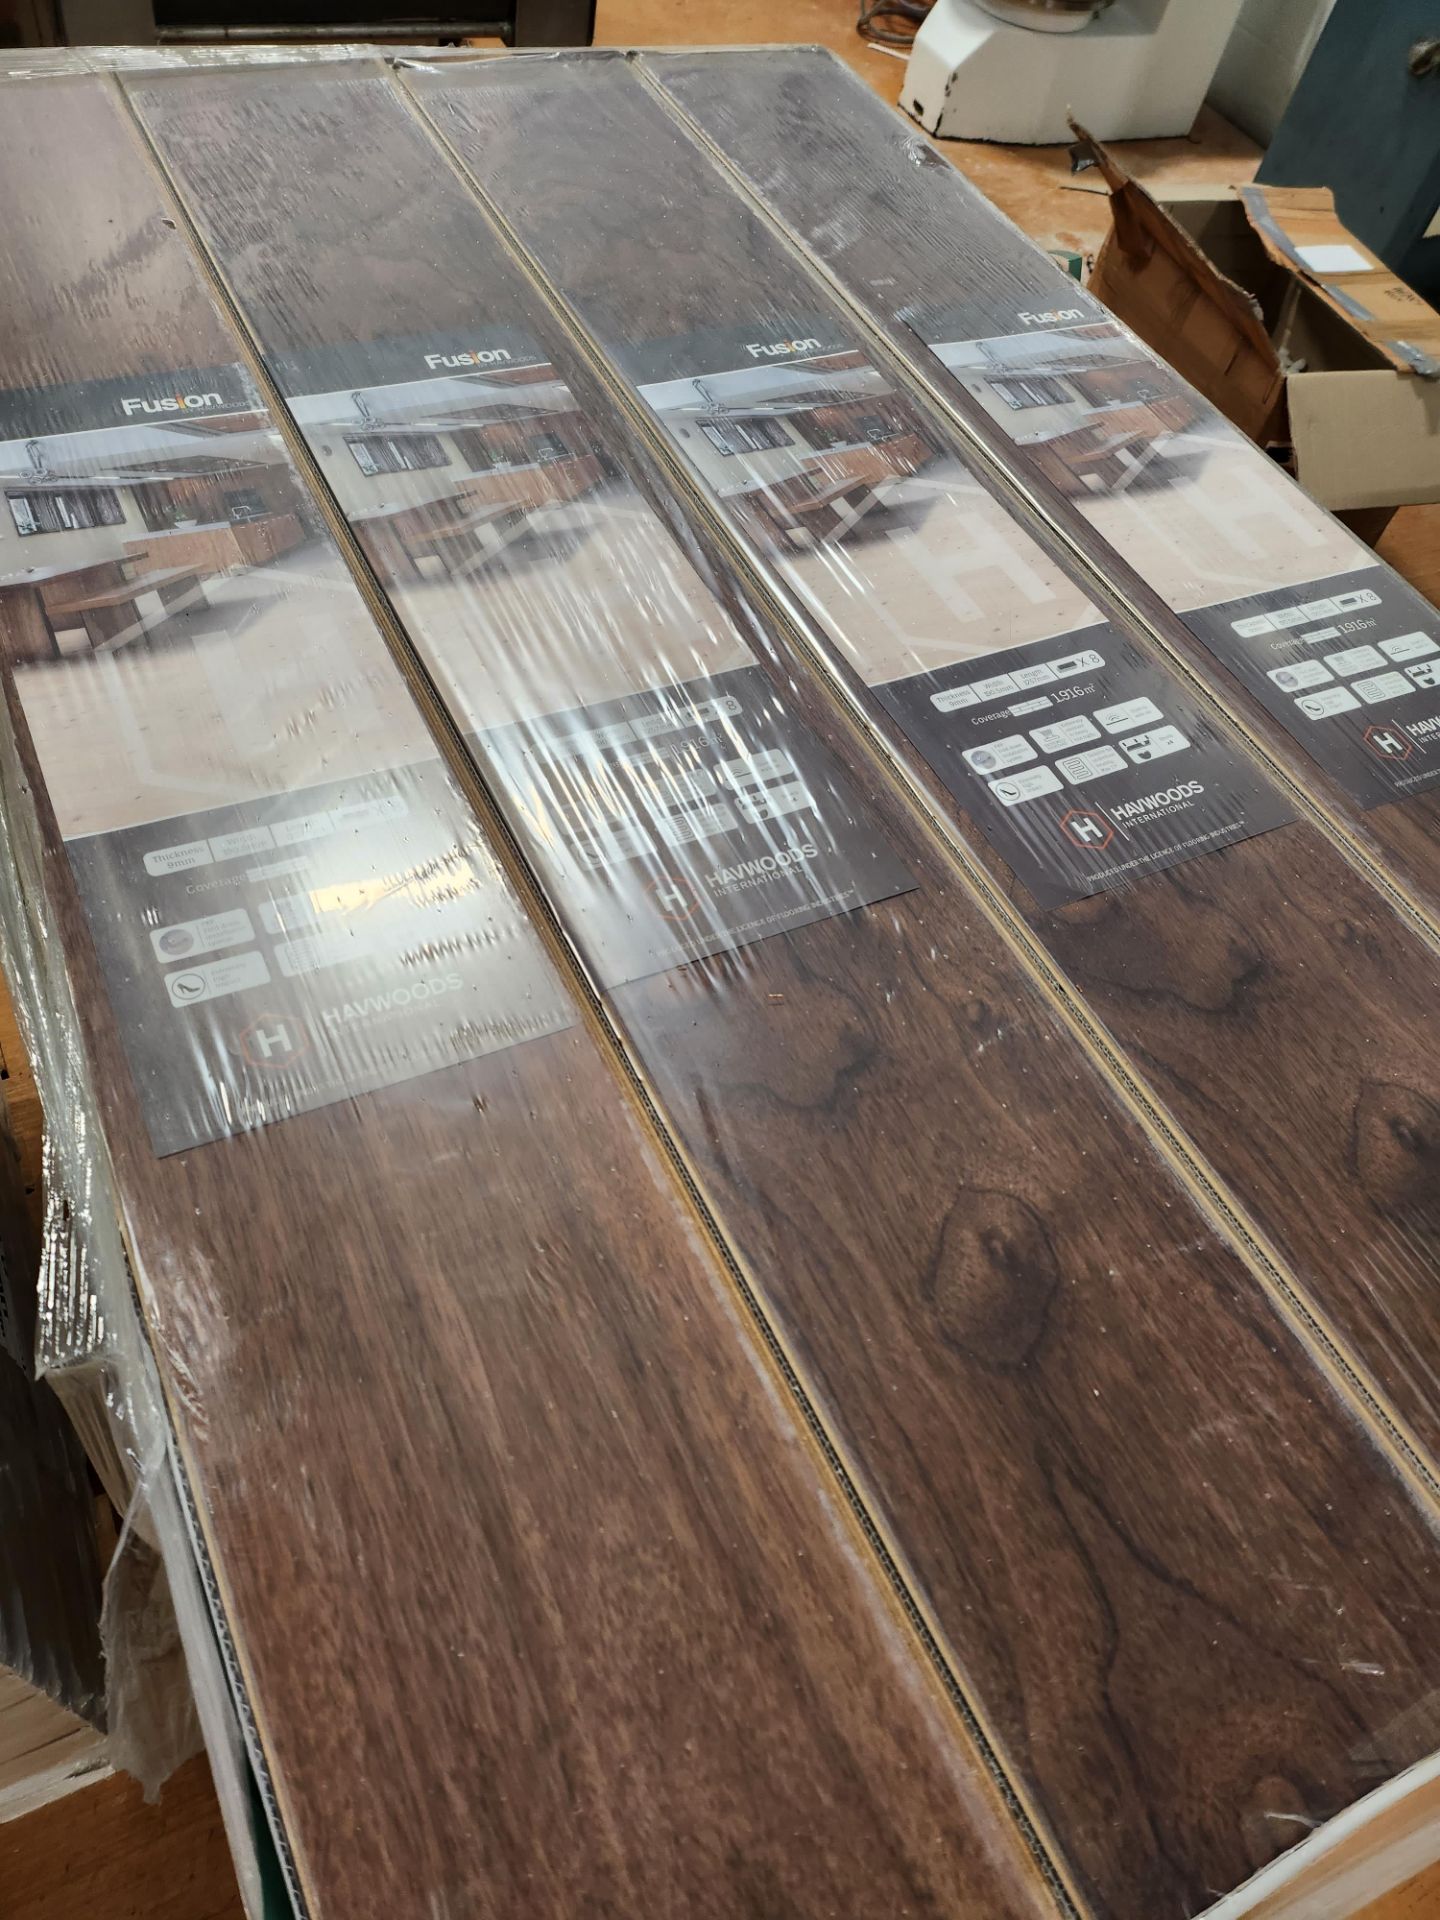 Ripton Wood-Look Repro-Engineered Textured Flooring HW9266 (30 Packs) - Image 2 of 6